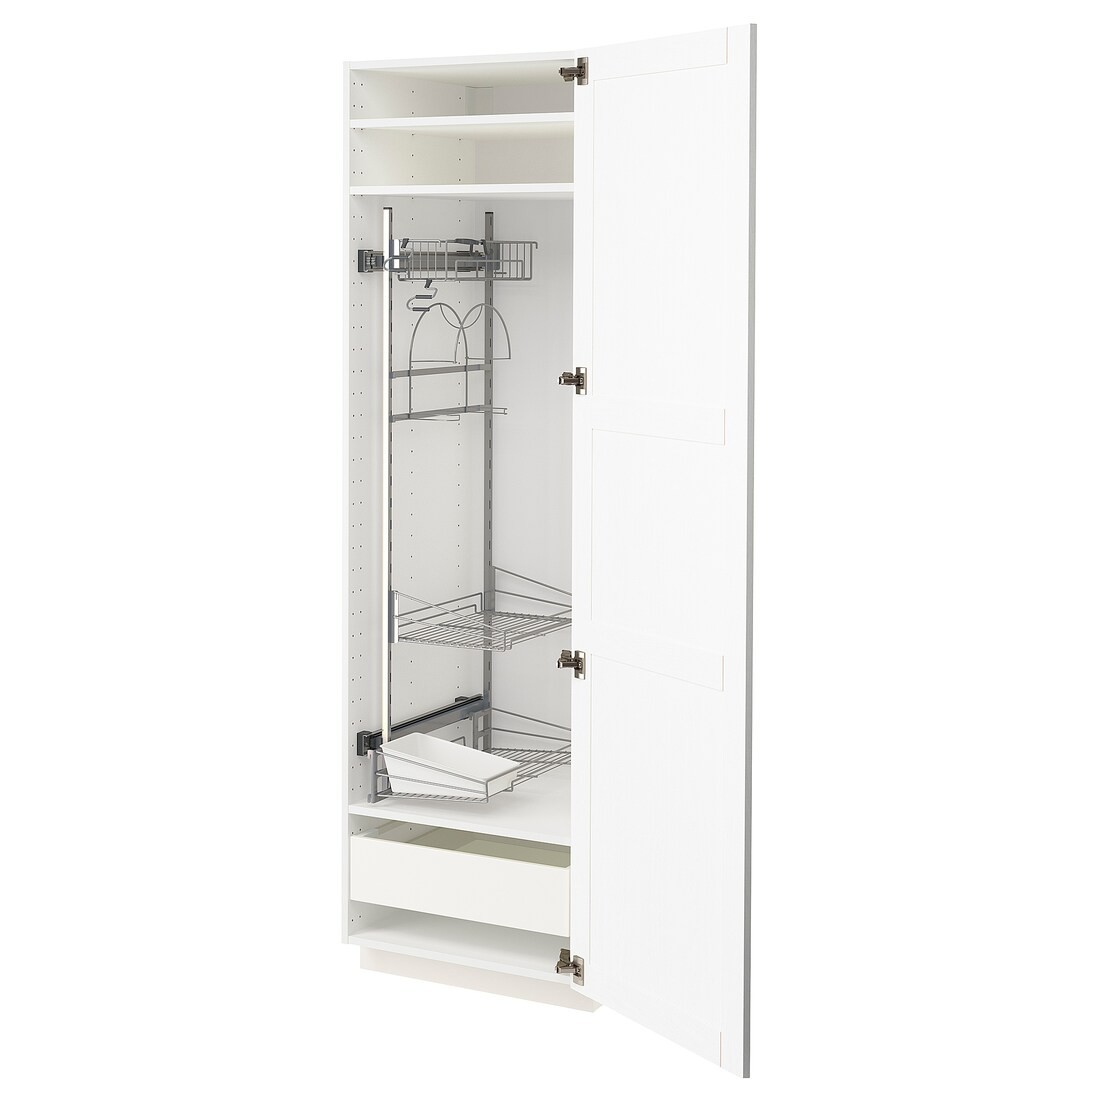 METOD МЕТОД / MAXIMERA МАКСИМЕРА Высокий шкаф с отделением для аксессуаров для уборки, белый Enköping / белый имитация дерева, 60x60x200 см